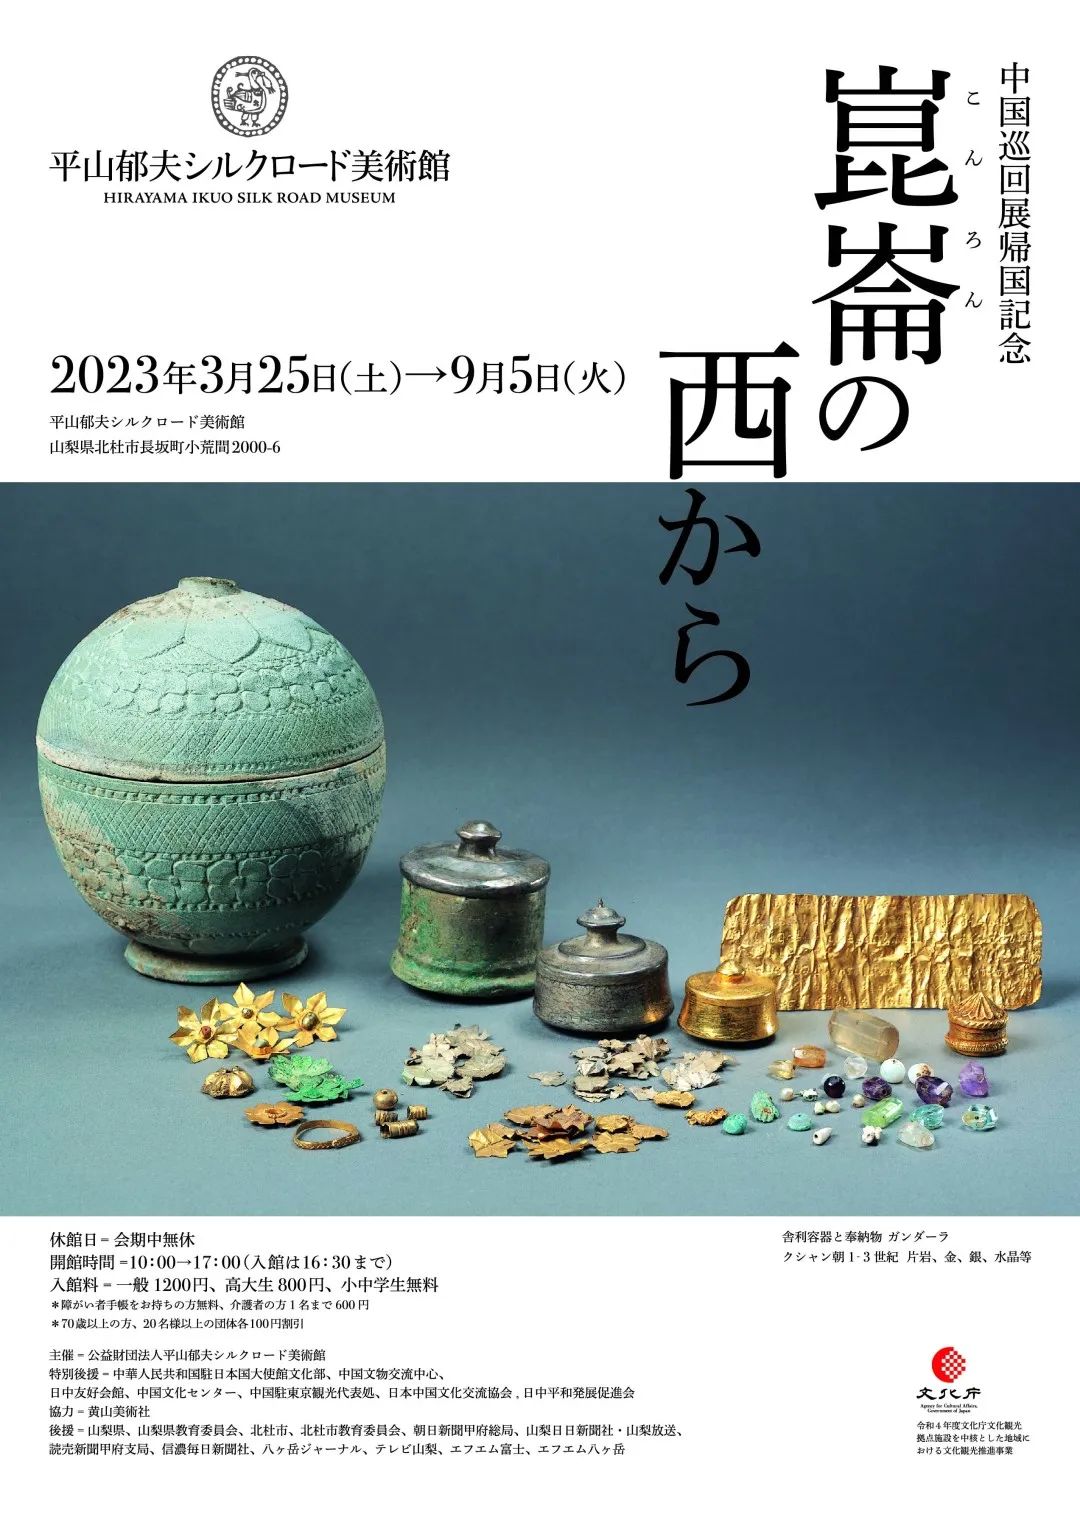 动态周报| 中国巡回展归国纪念《昆仑之西》25日在日本平山郁夫丝路美术